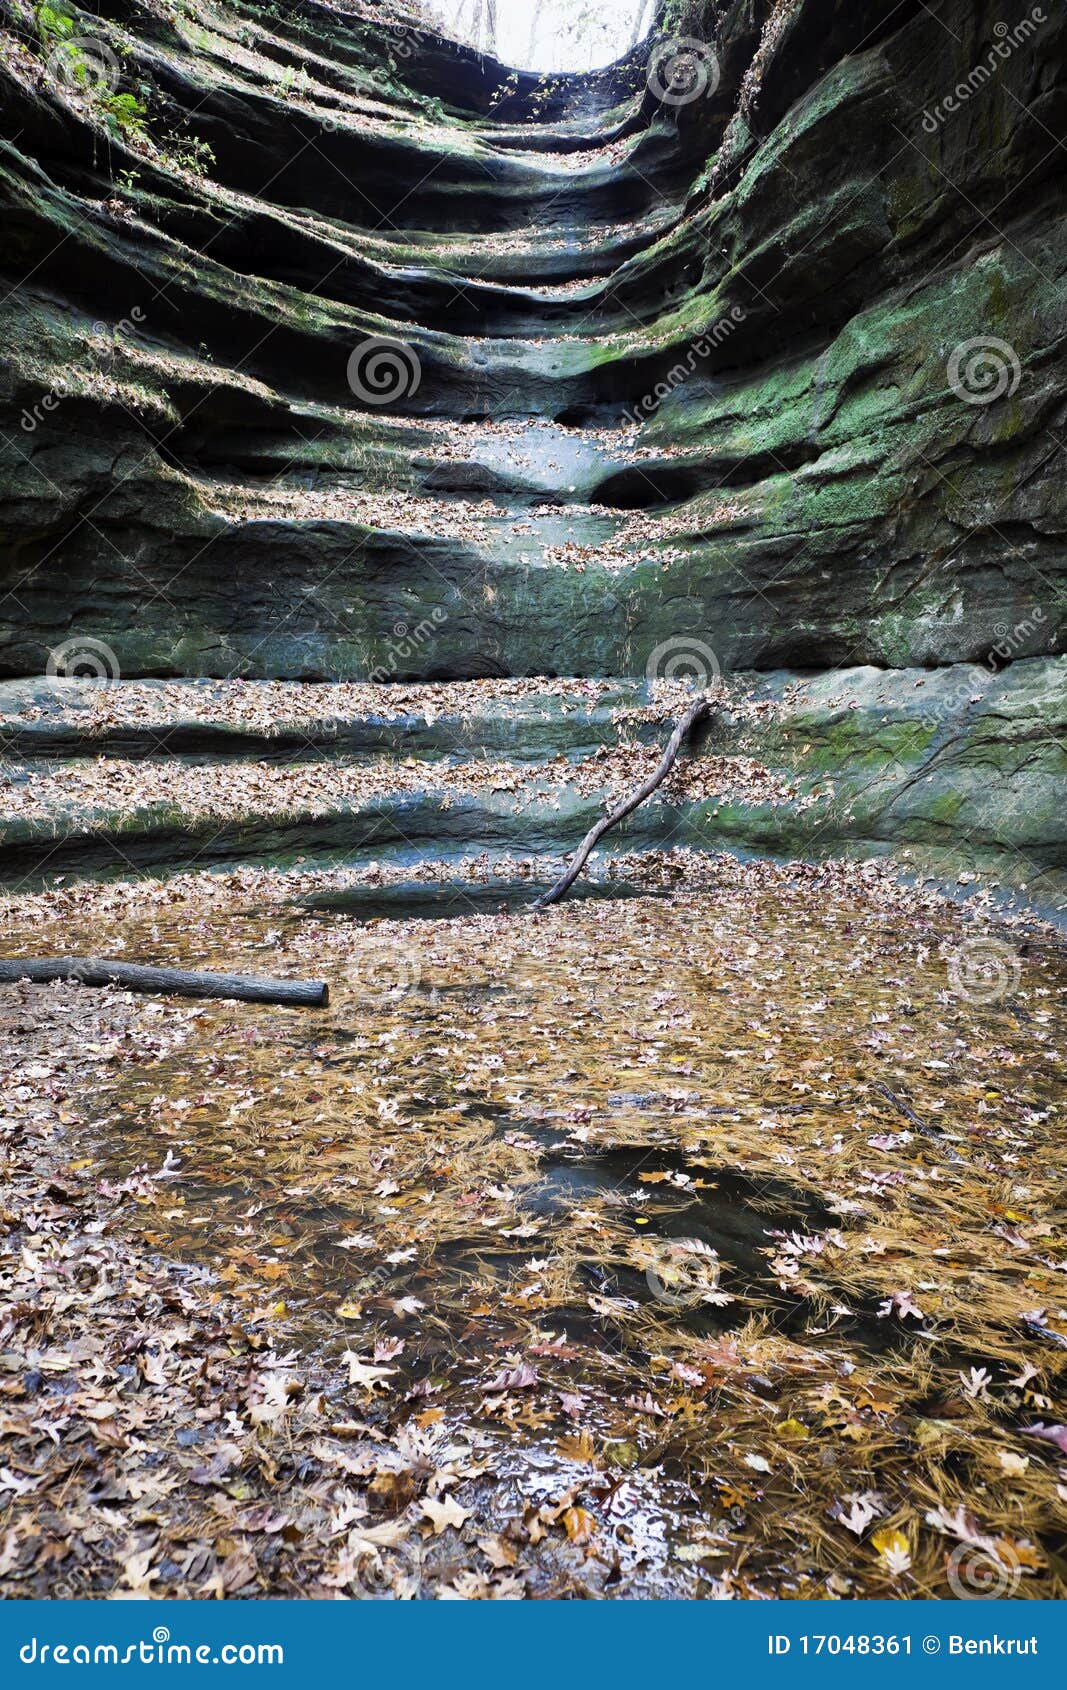 Cascada seca en parque de estado hambriento de la roca. Cascada seca en el parque de estado hambriento de la roca, Illinois.